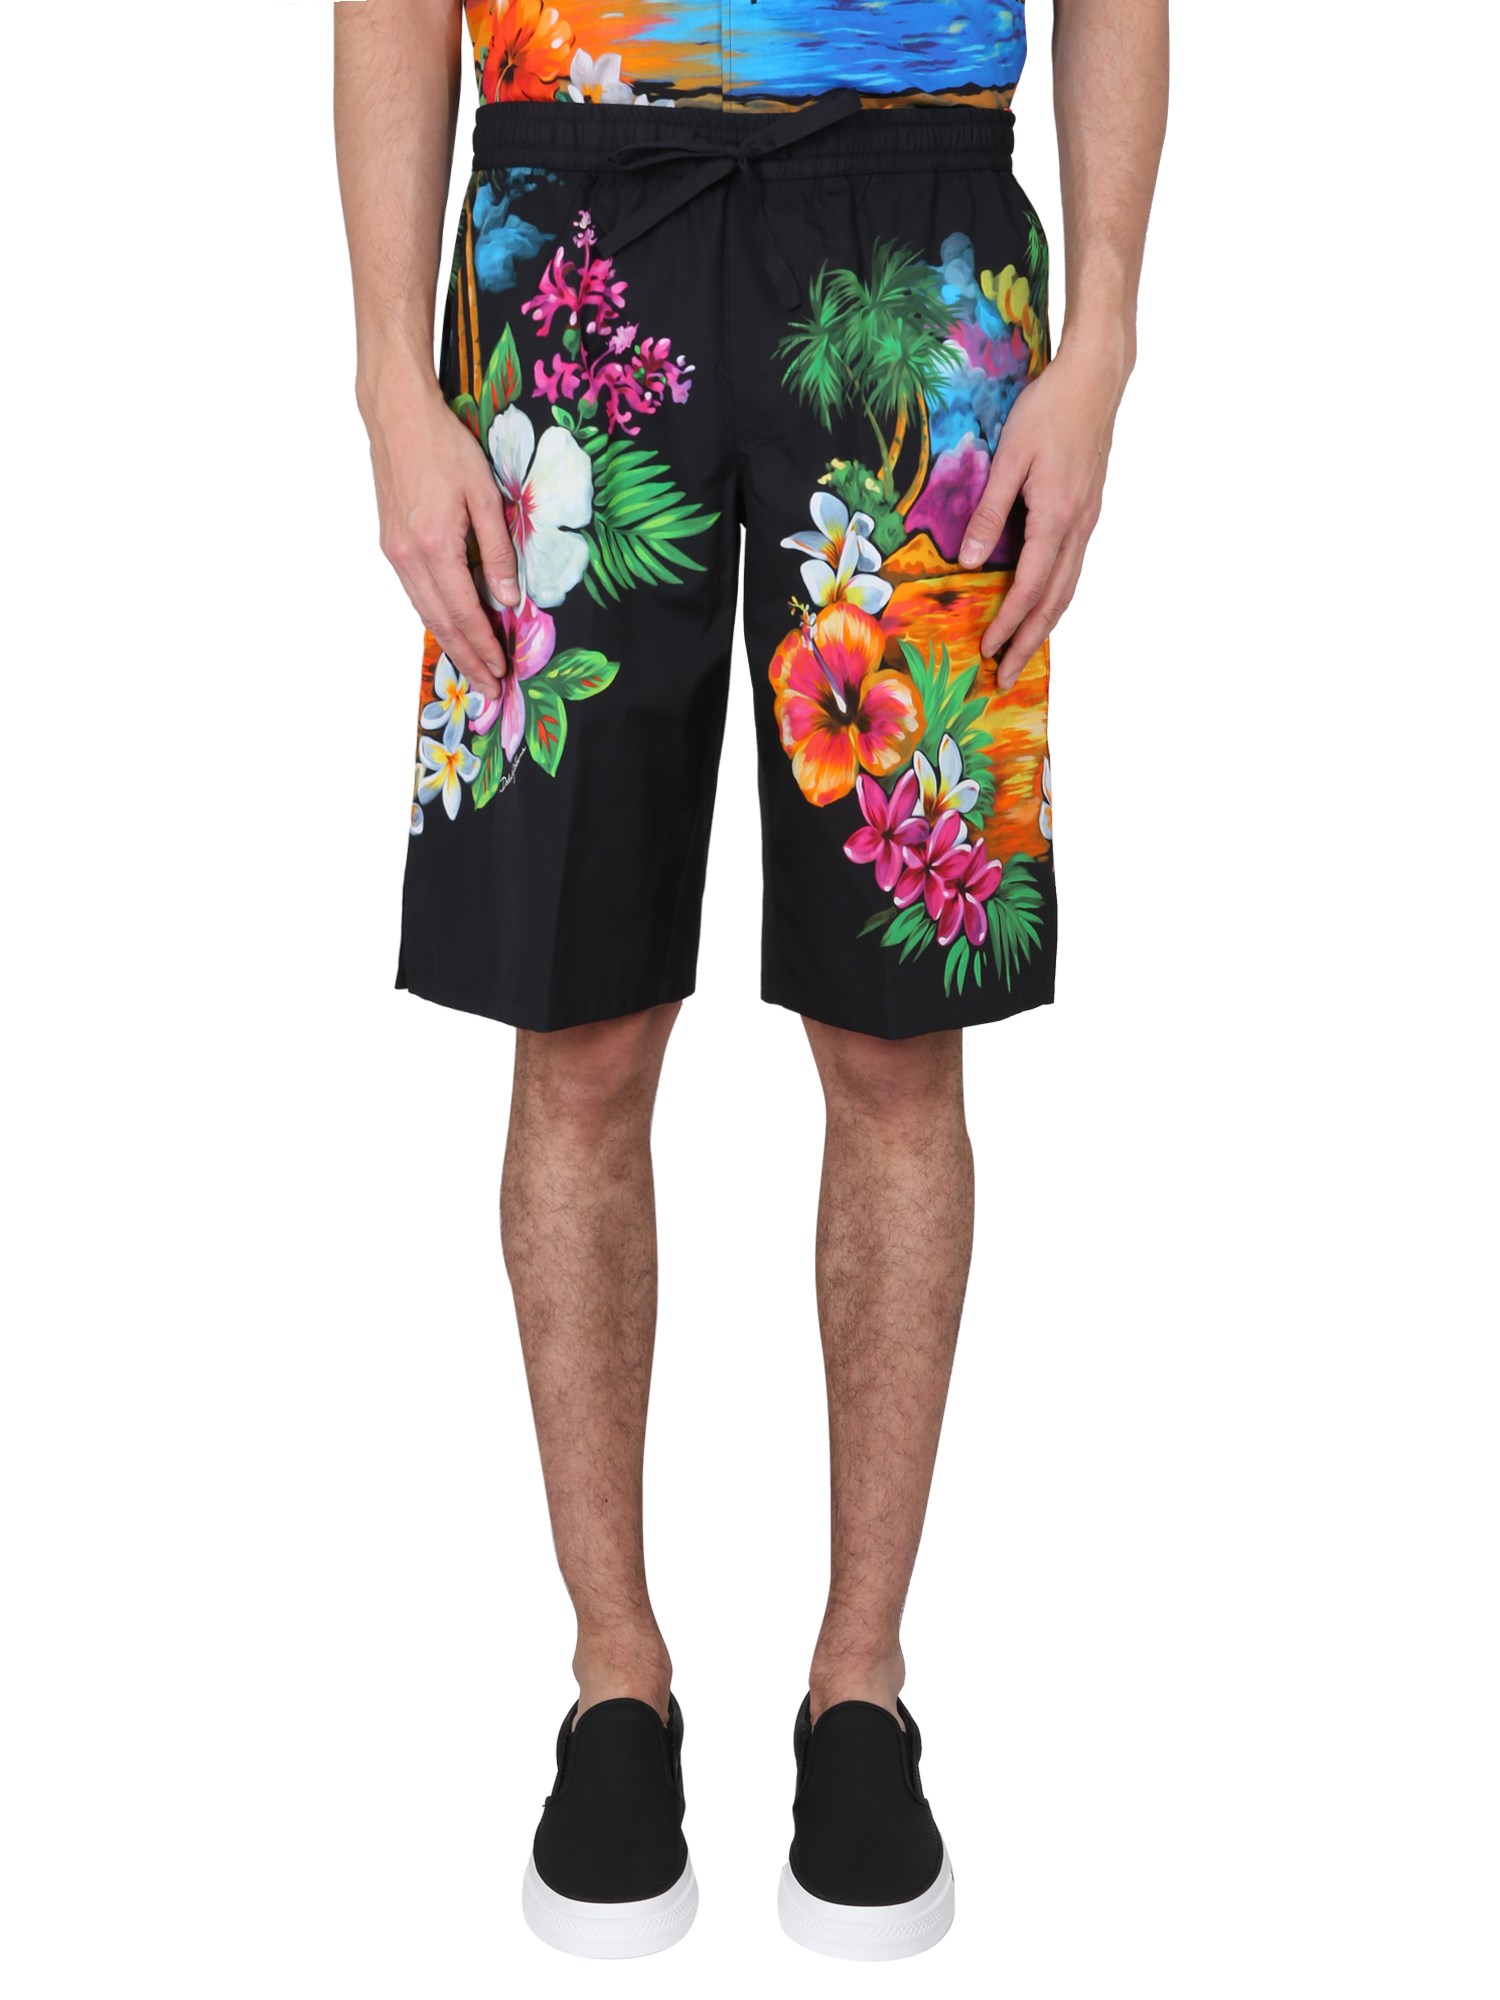 dolce & gabbana bermuda shorts with hawaii print